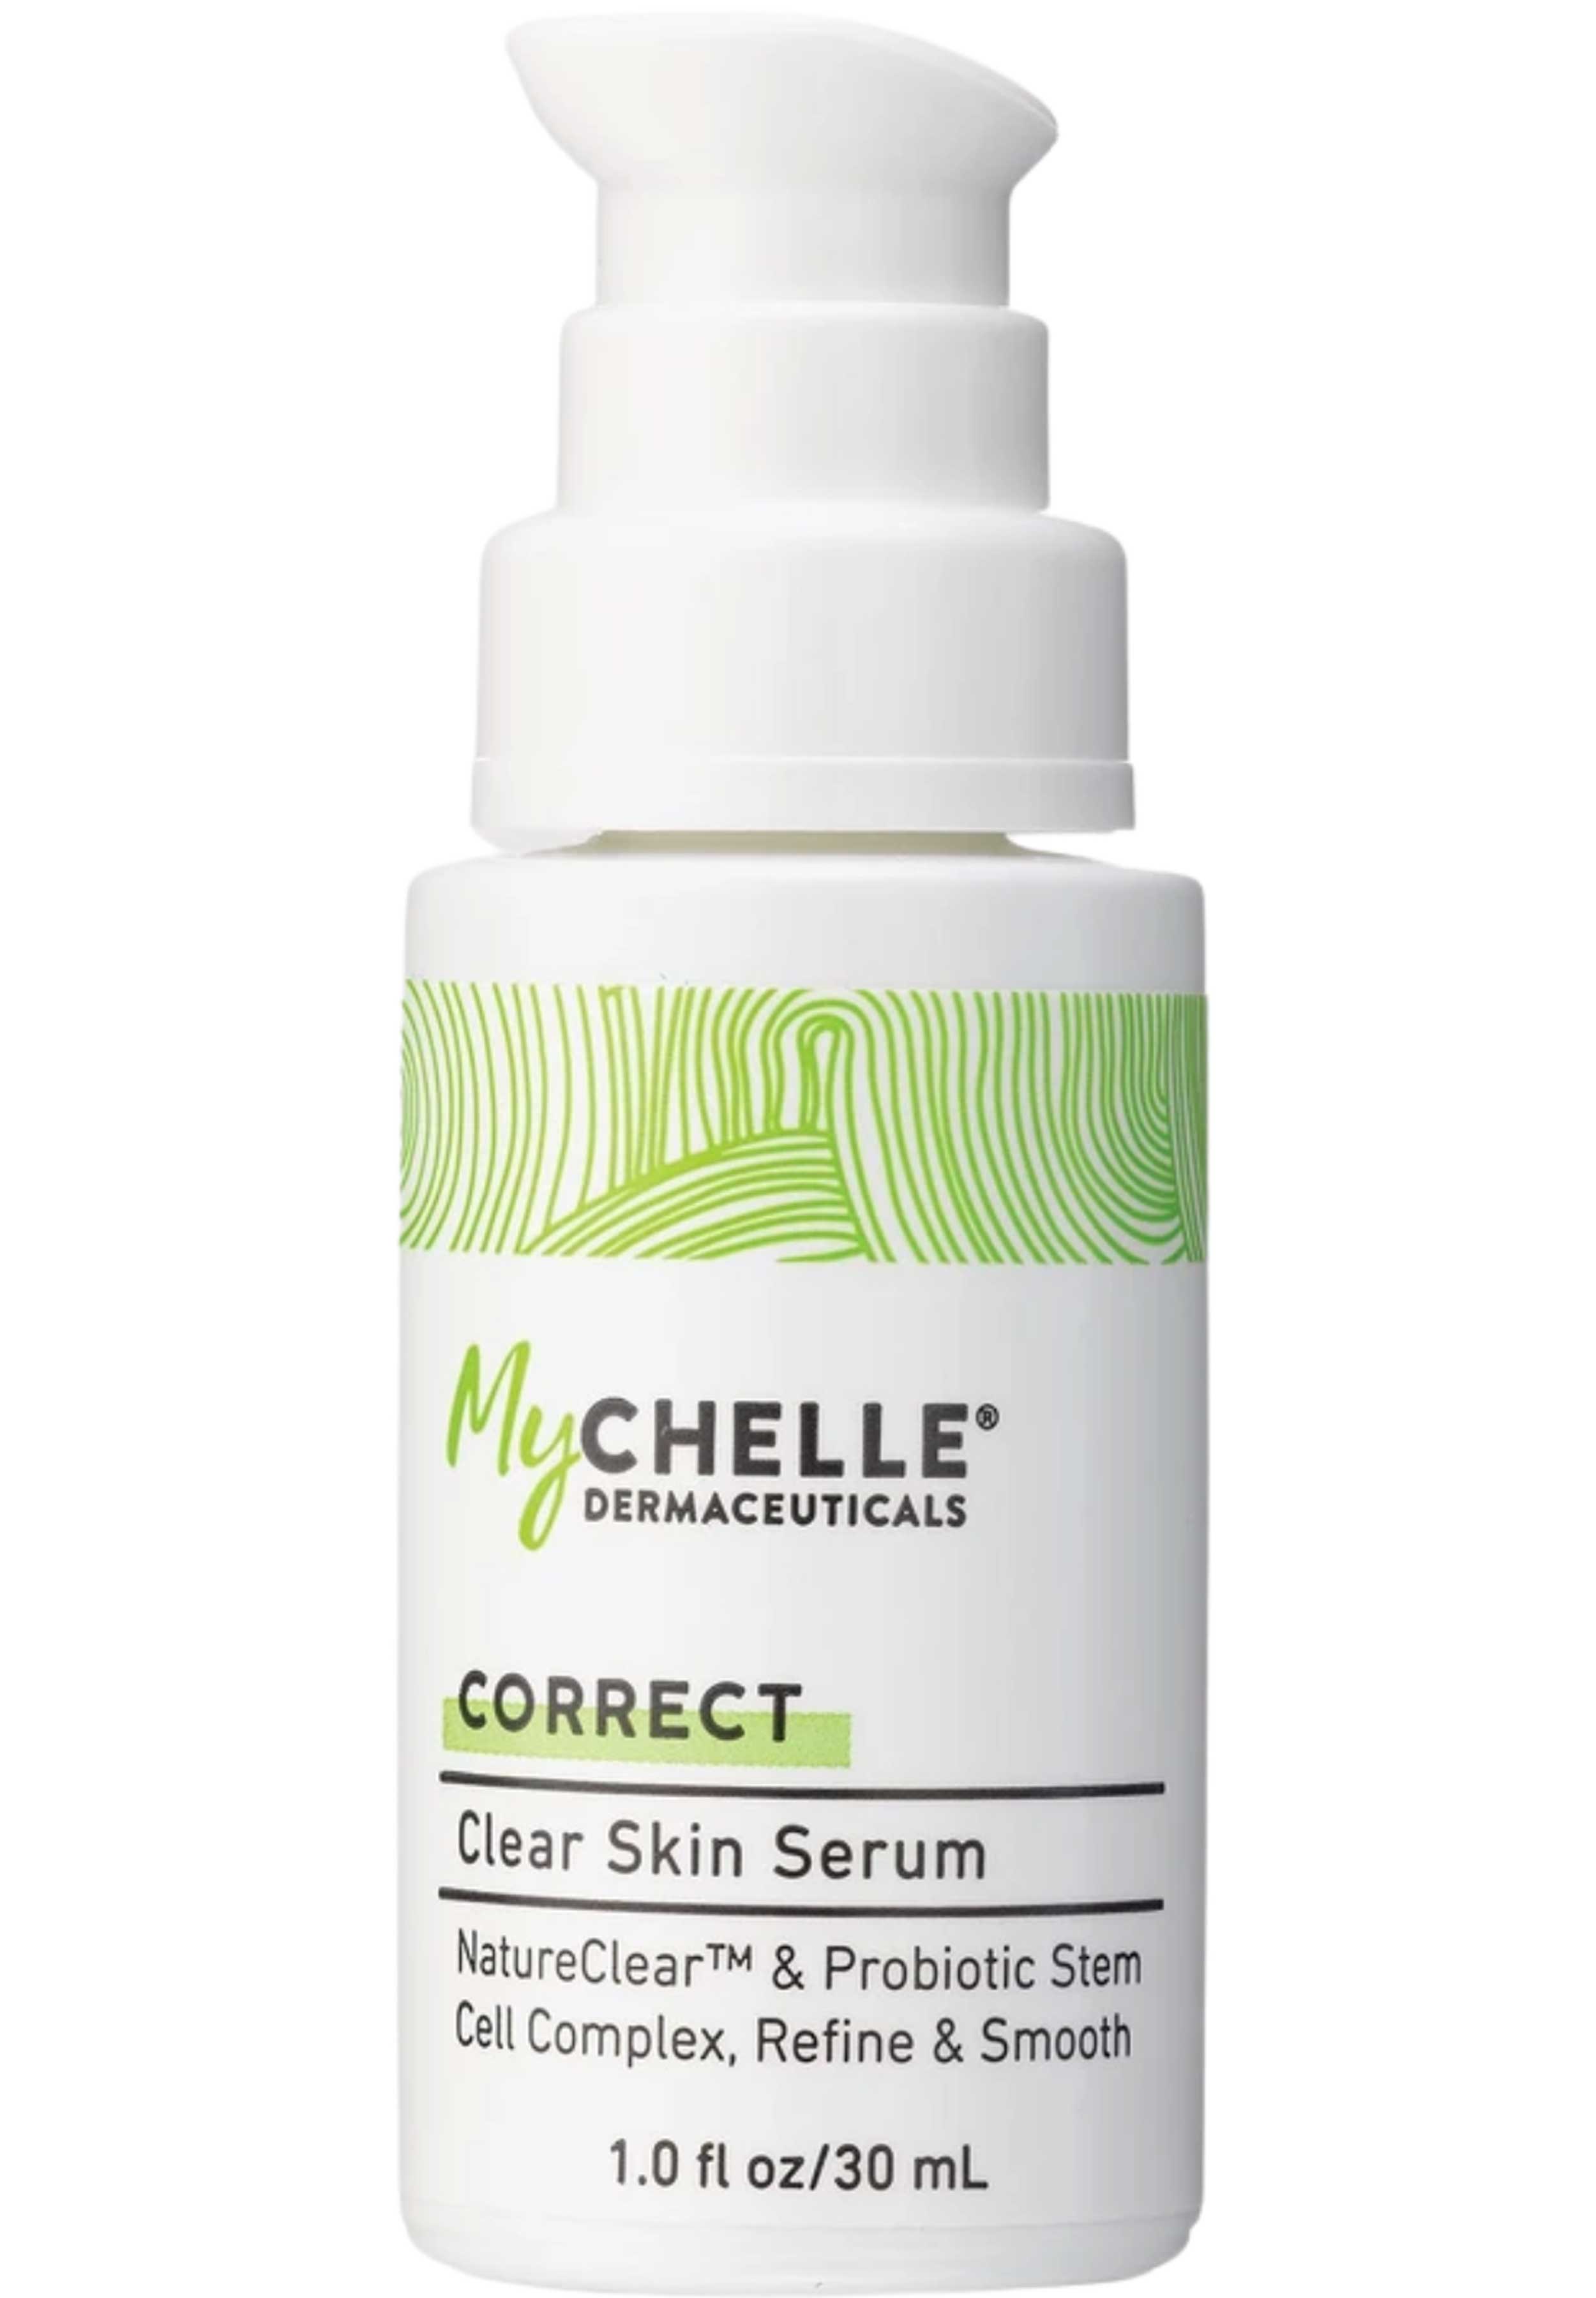 MyChelle Dermaceuticals Clear Skin Serum